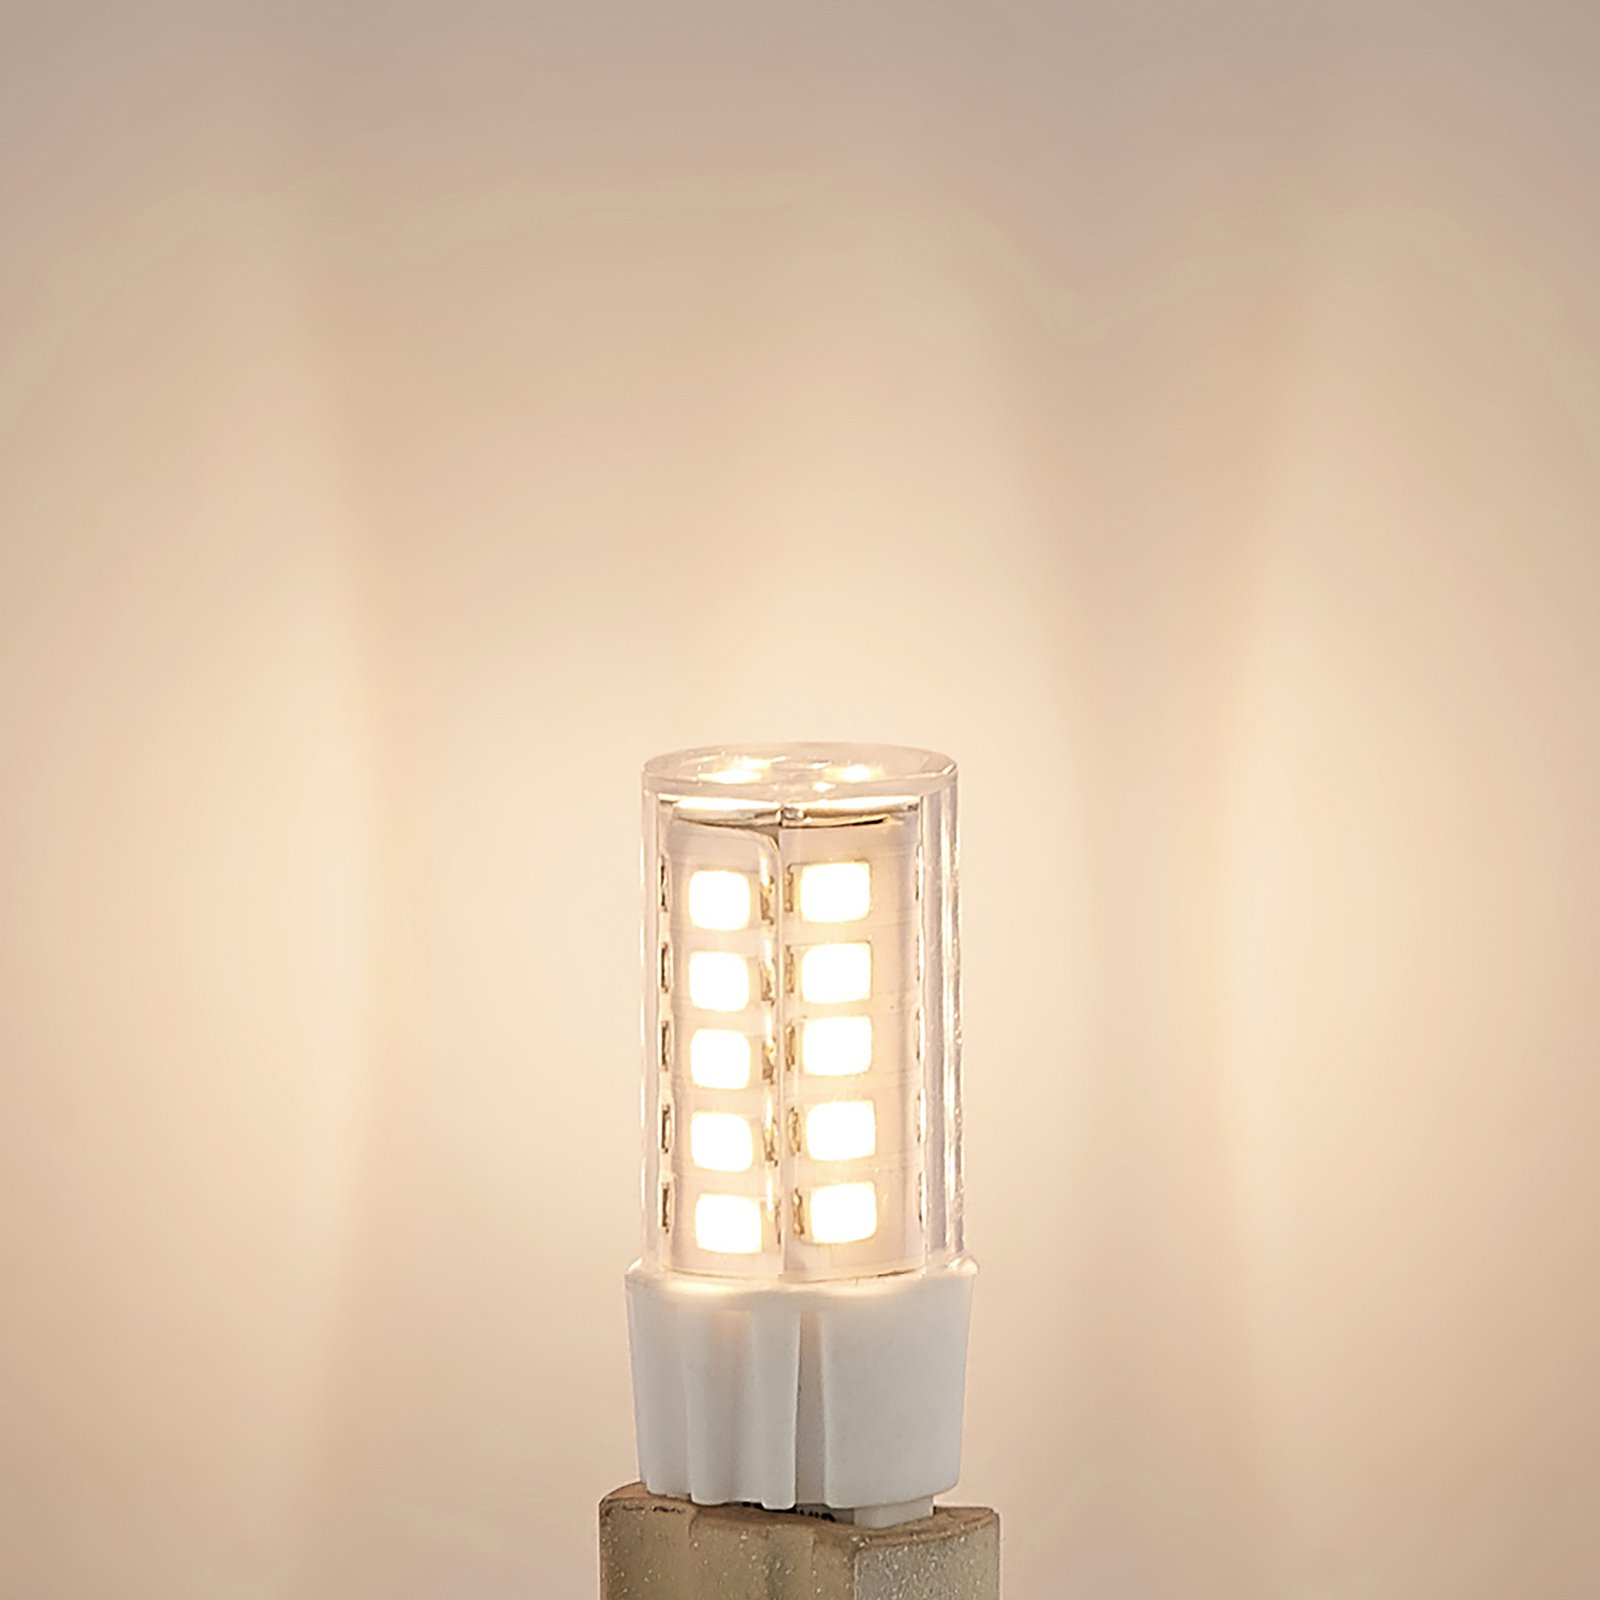 Arcchio bi-pin LED bulb G9 3.5 W 830 10-pack